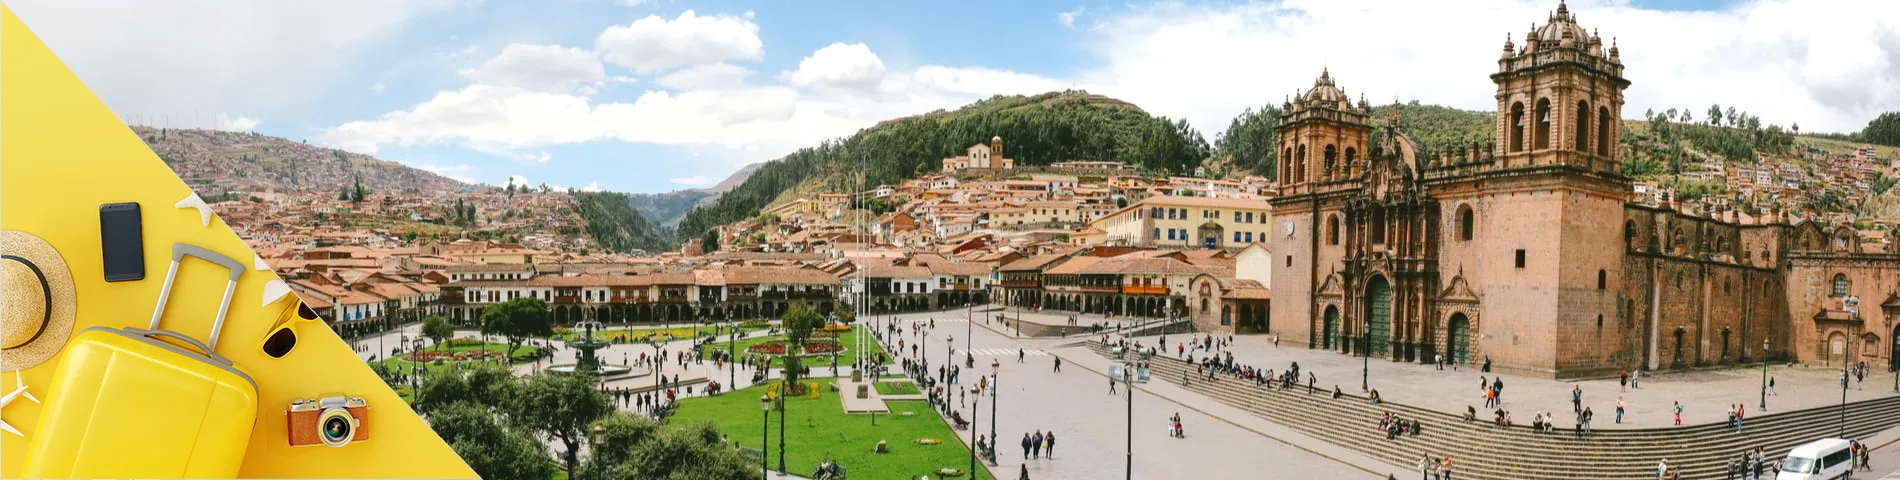 Cuzco - Holiday